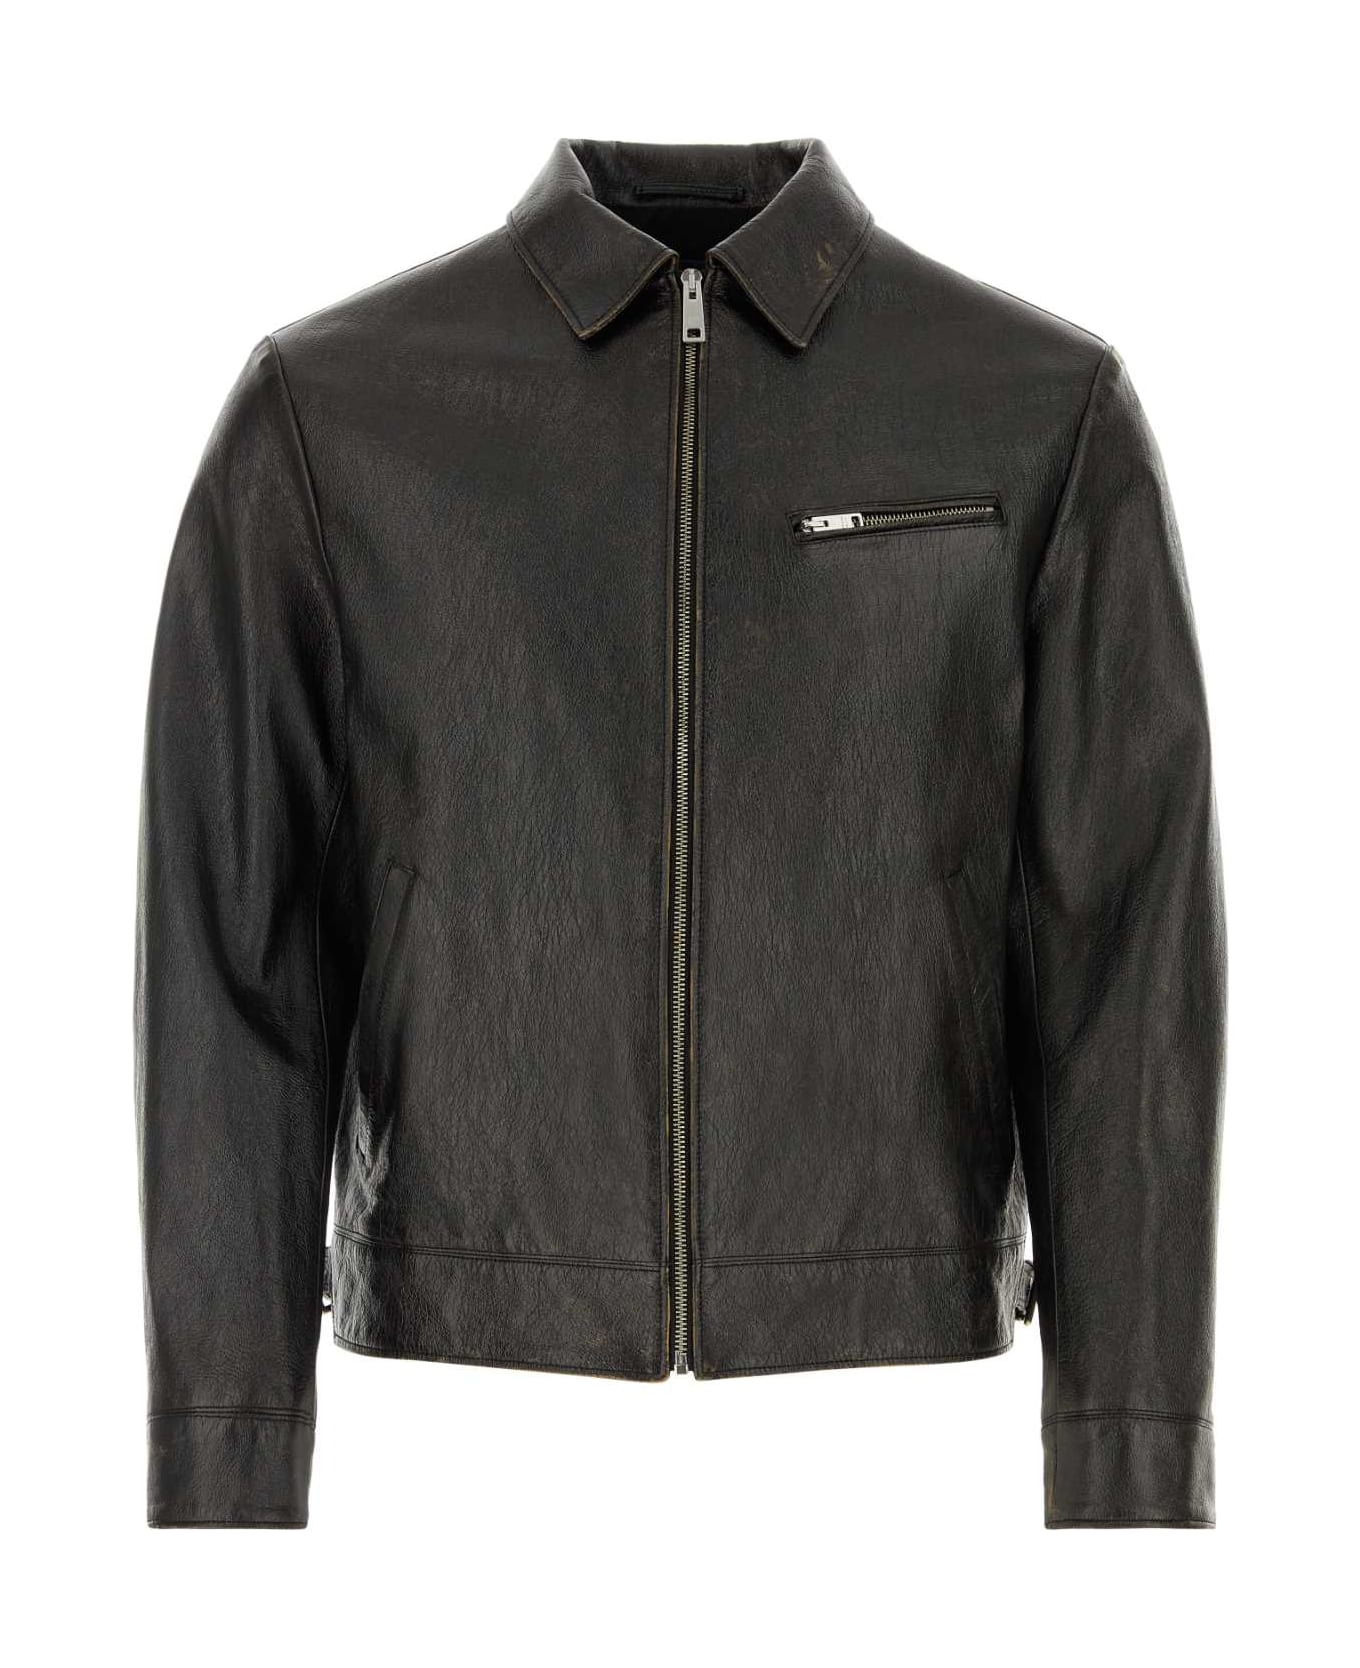 Prada Black Leather Jacket - NERO